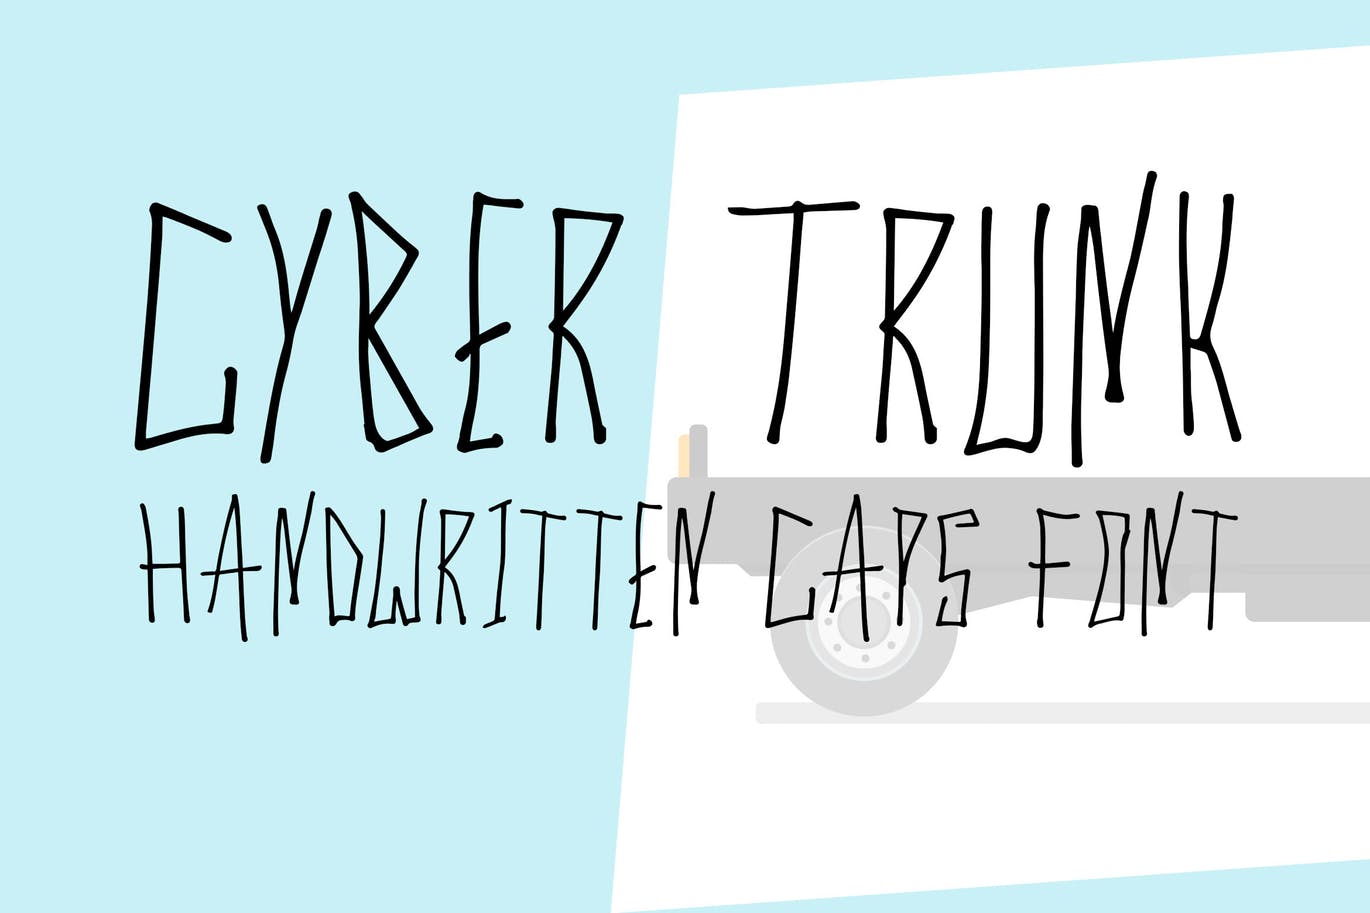 独特笔画创意英文手写字体素材库精选 Cyber Trunk – Handwritten Font插图